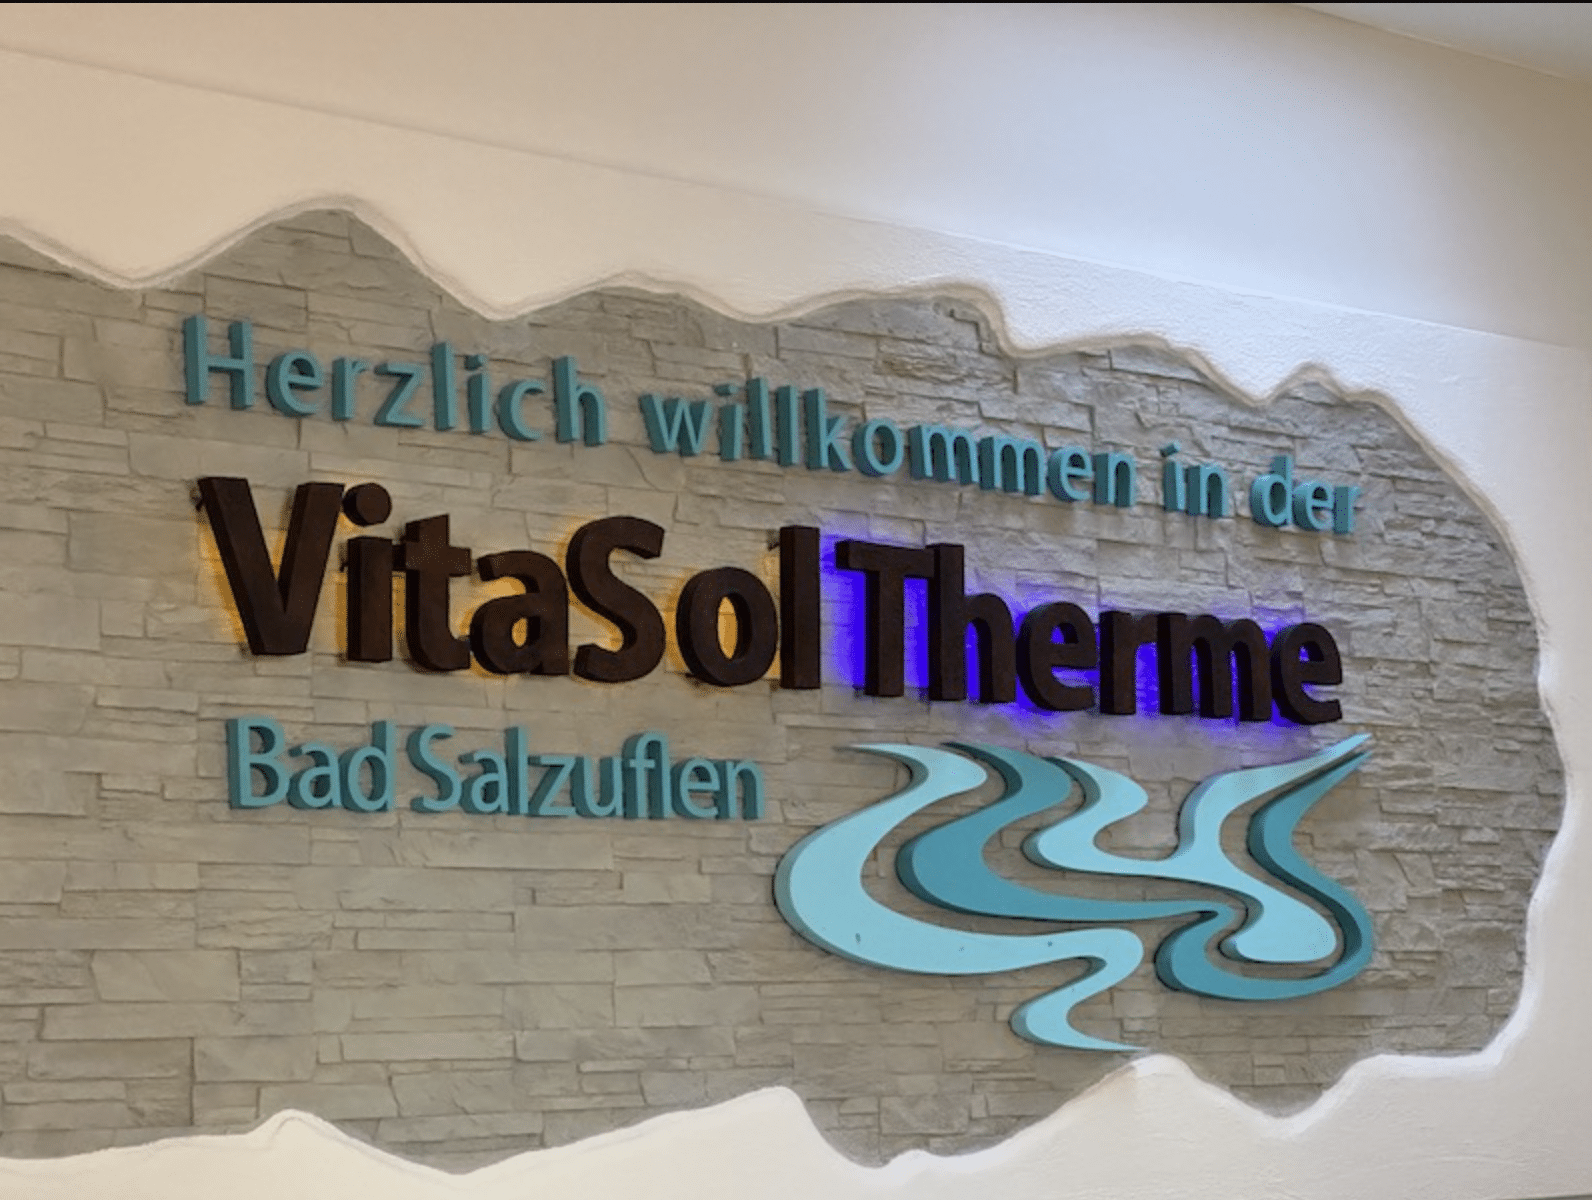 Vitasol Therme Bad Salzuflen